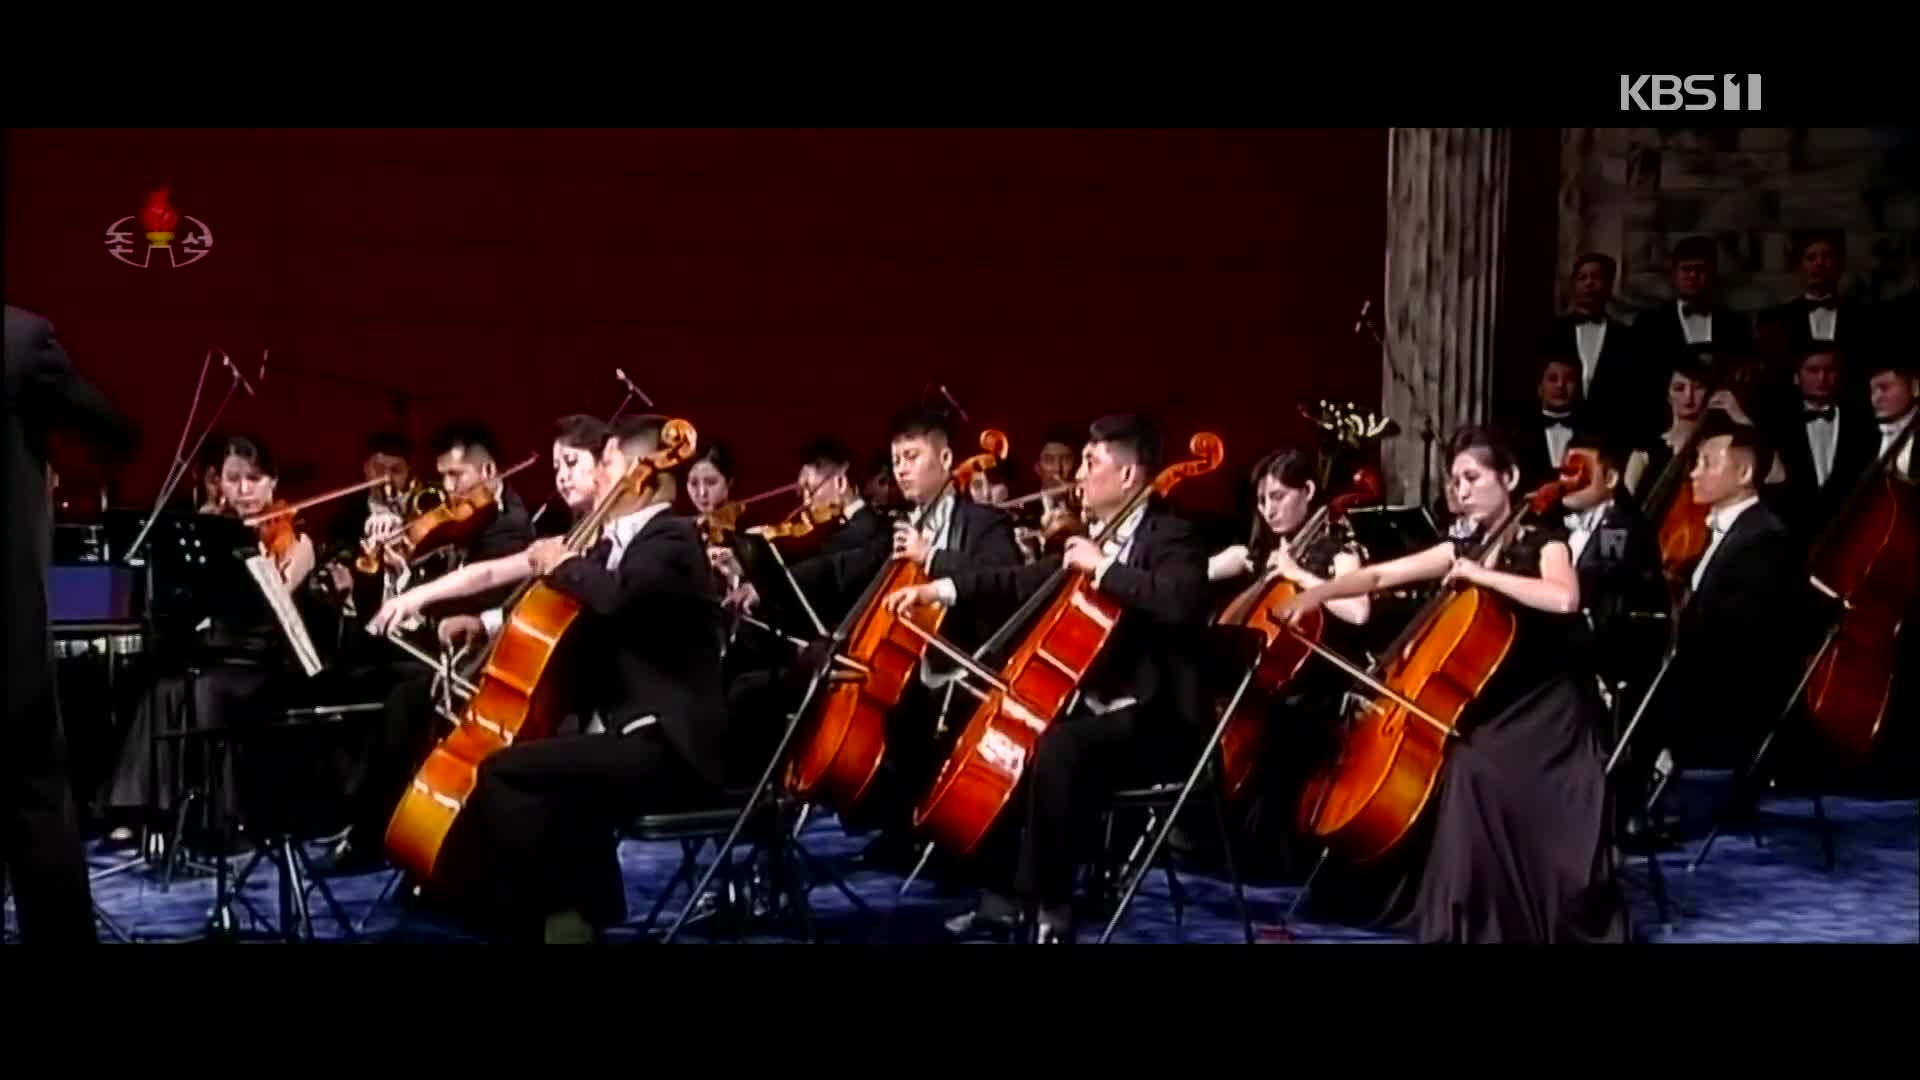 [북한 영상] 북한 국무위원회 연주단 공연